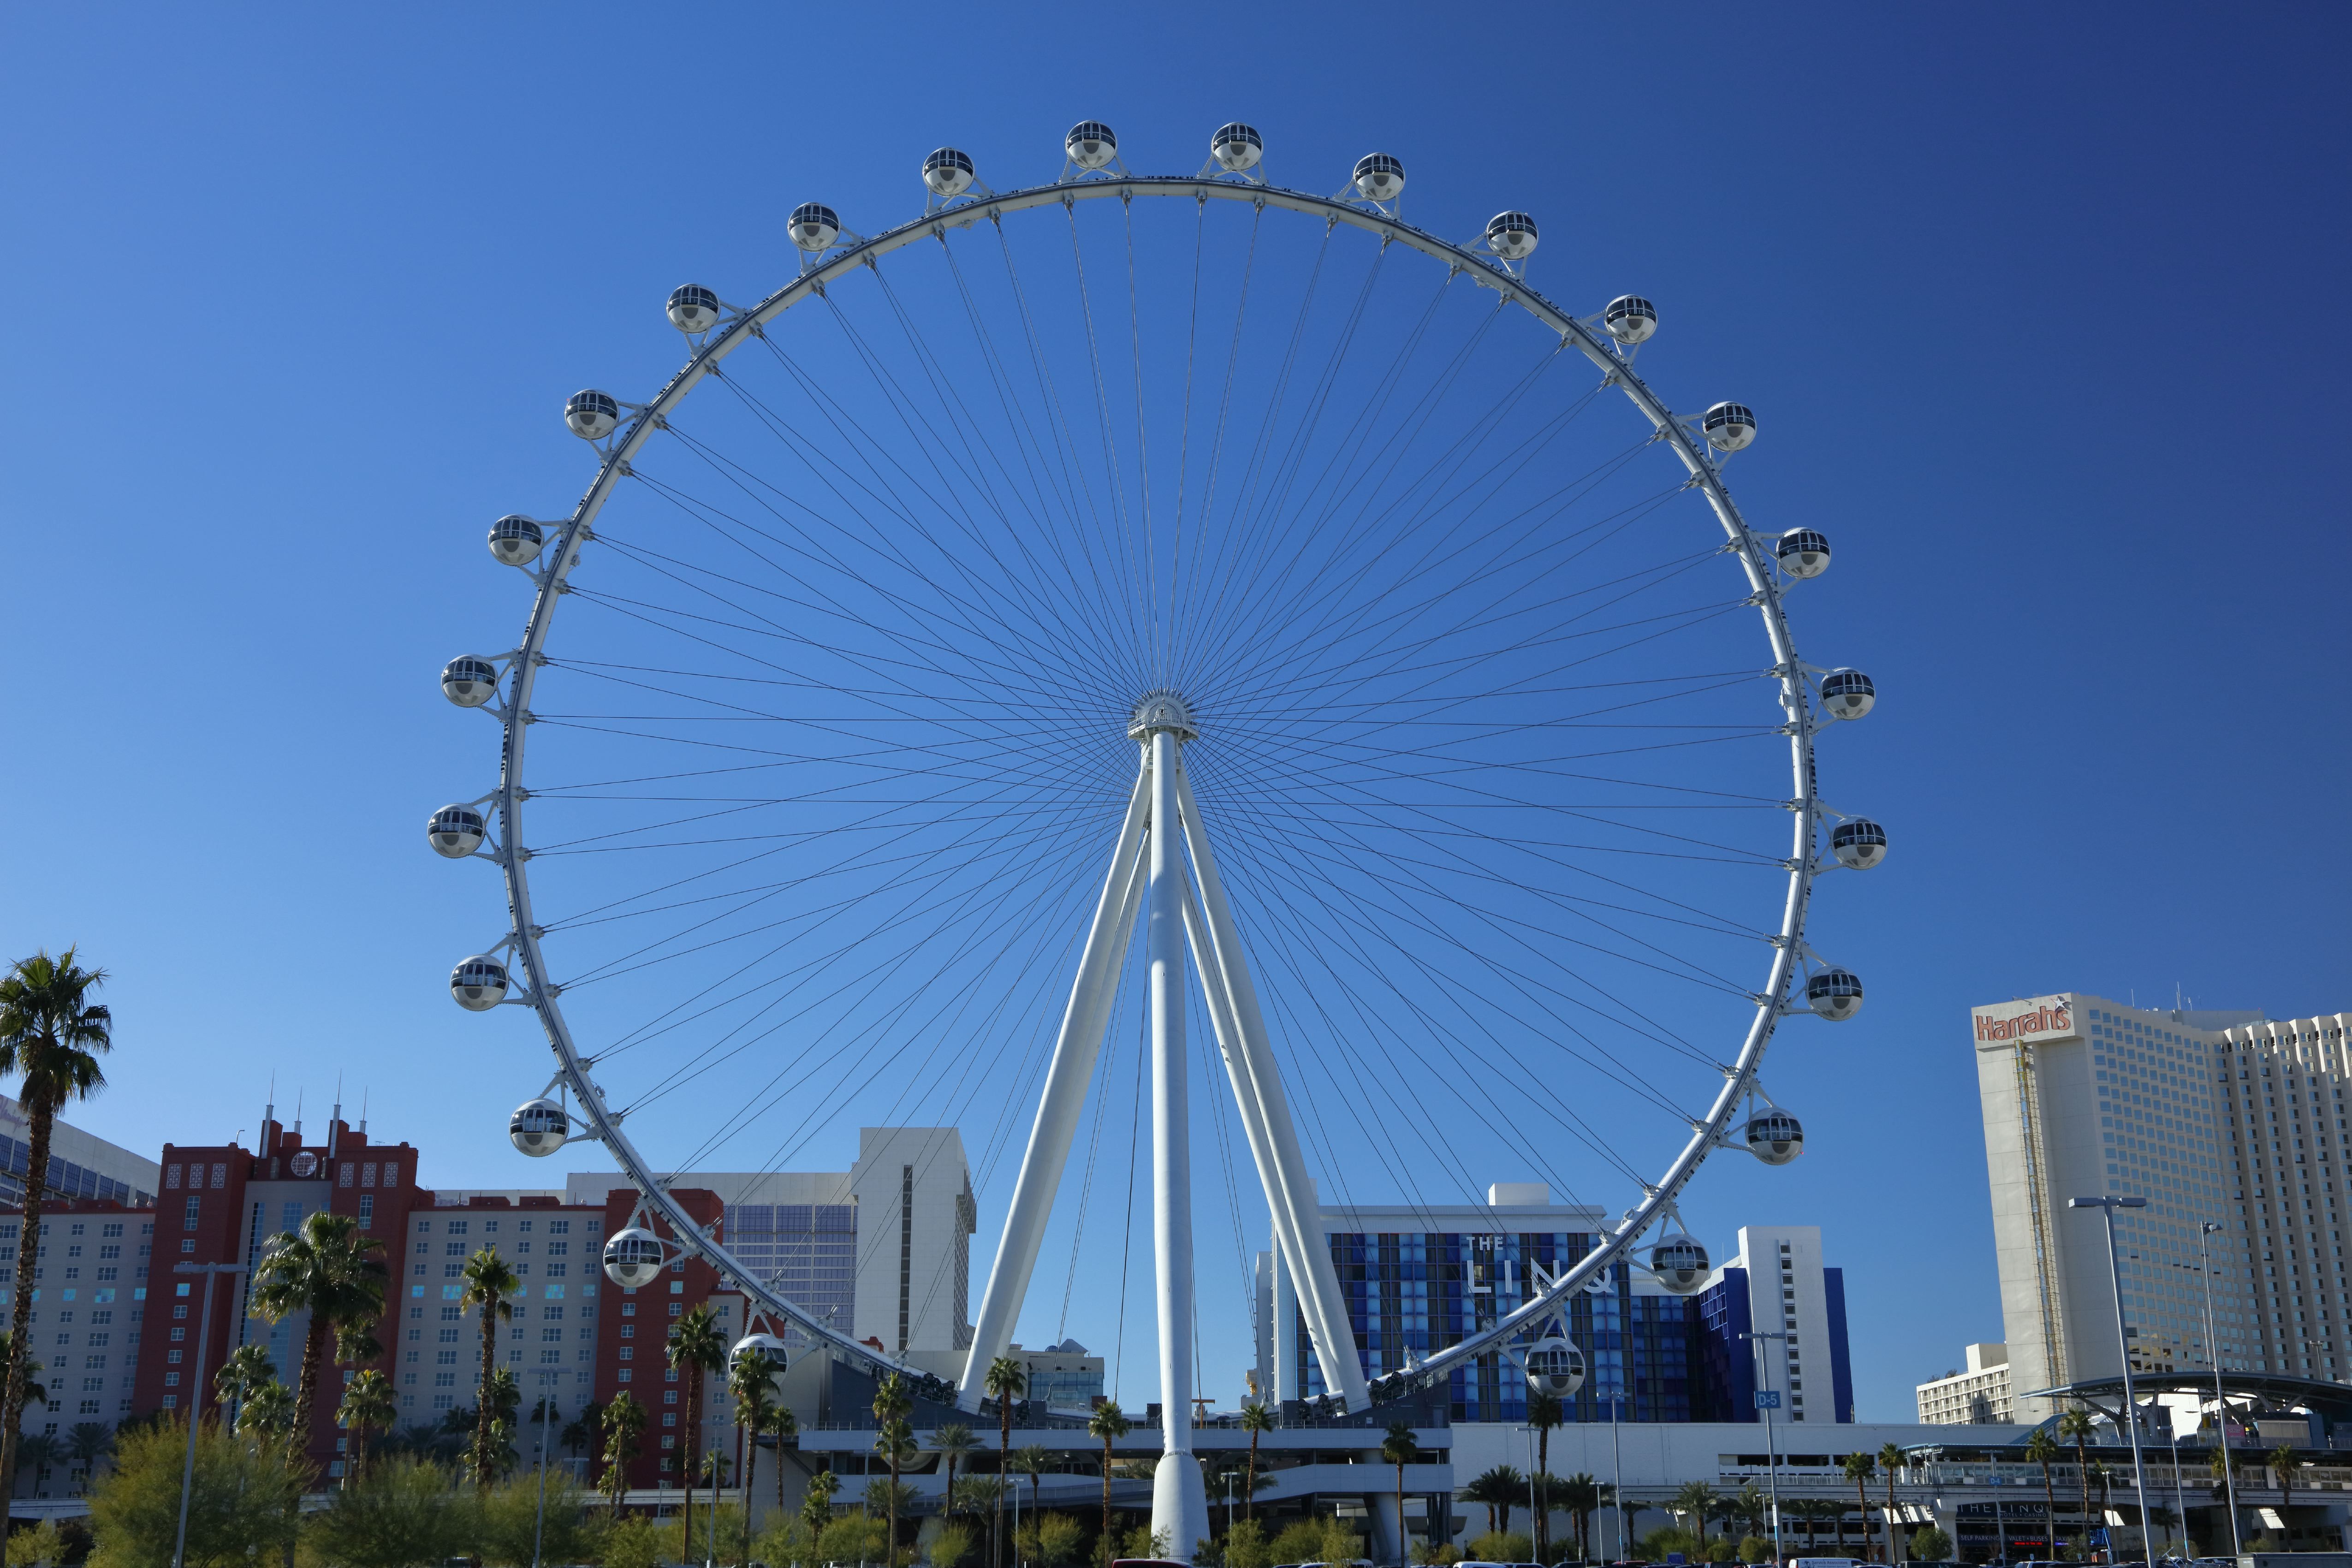 Where to next for giant Ferris wheel?